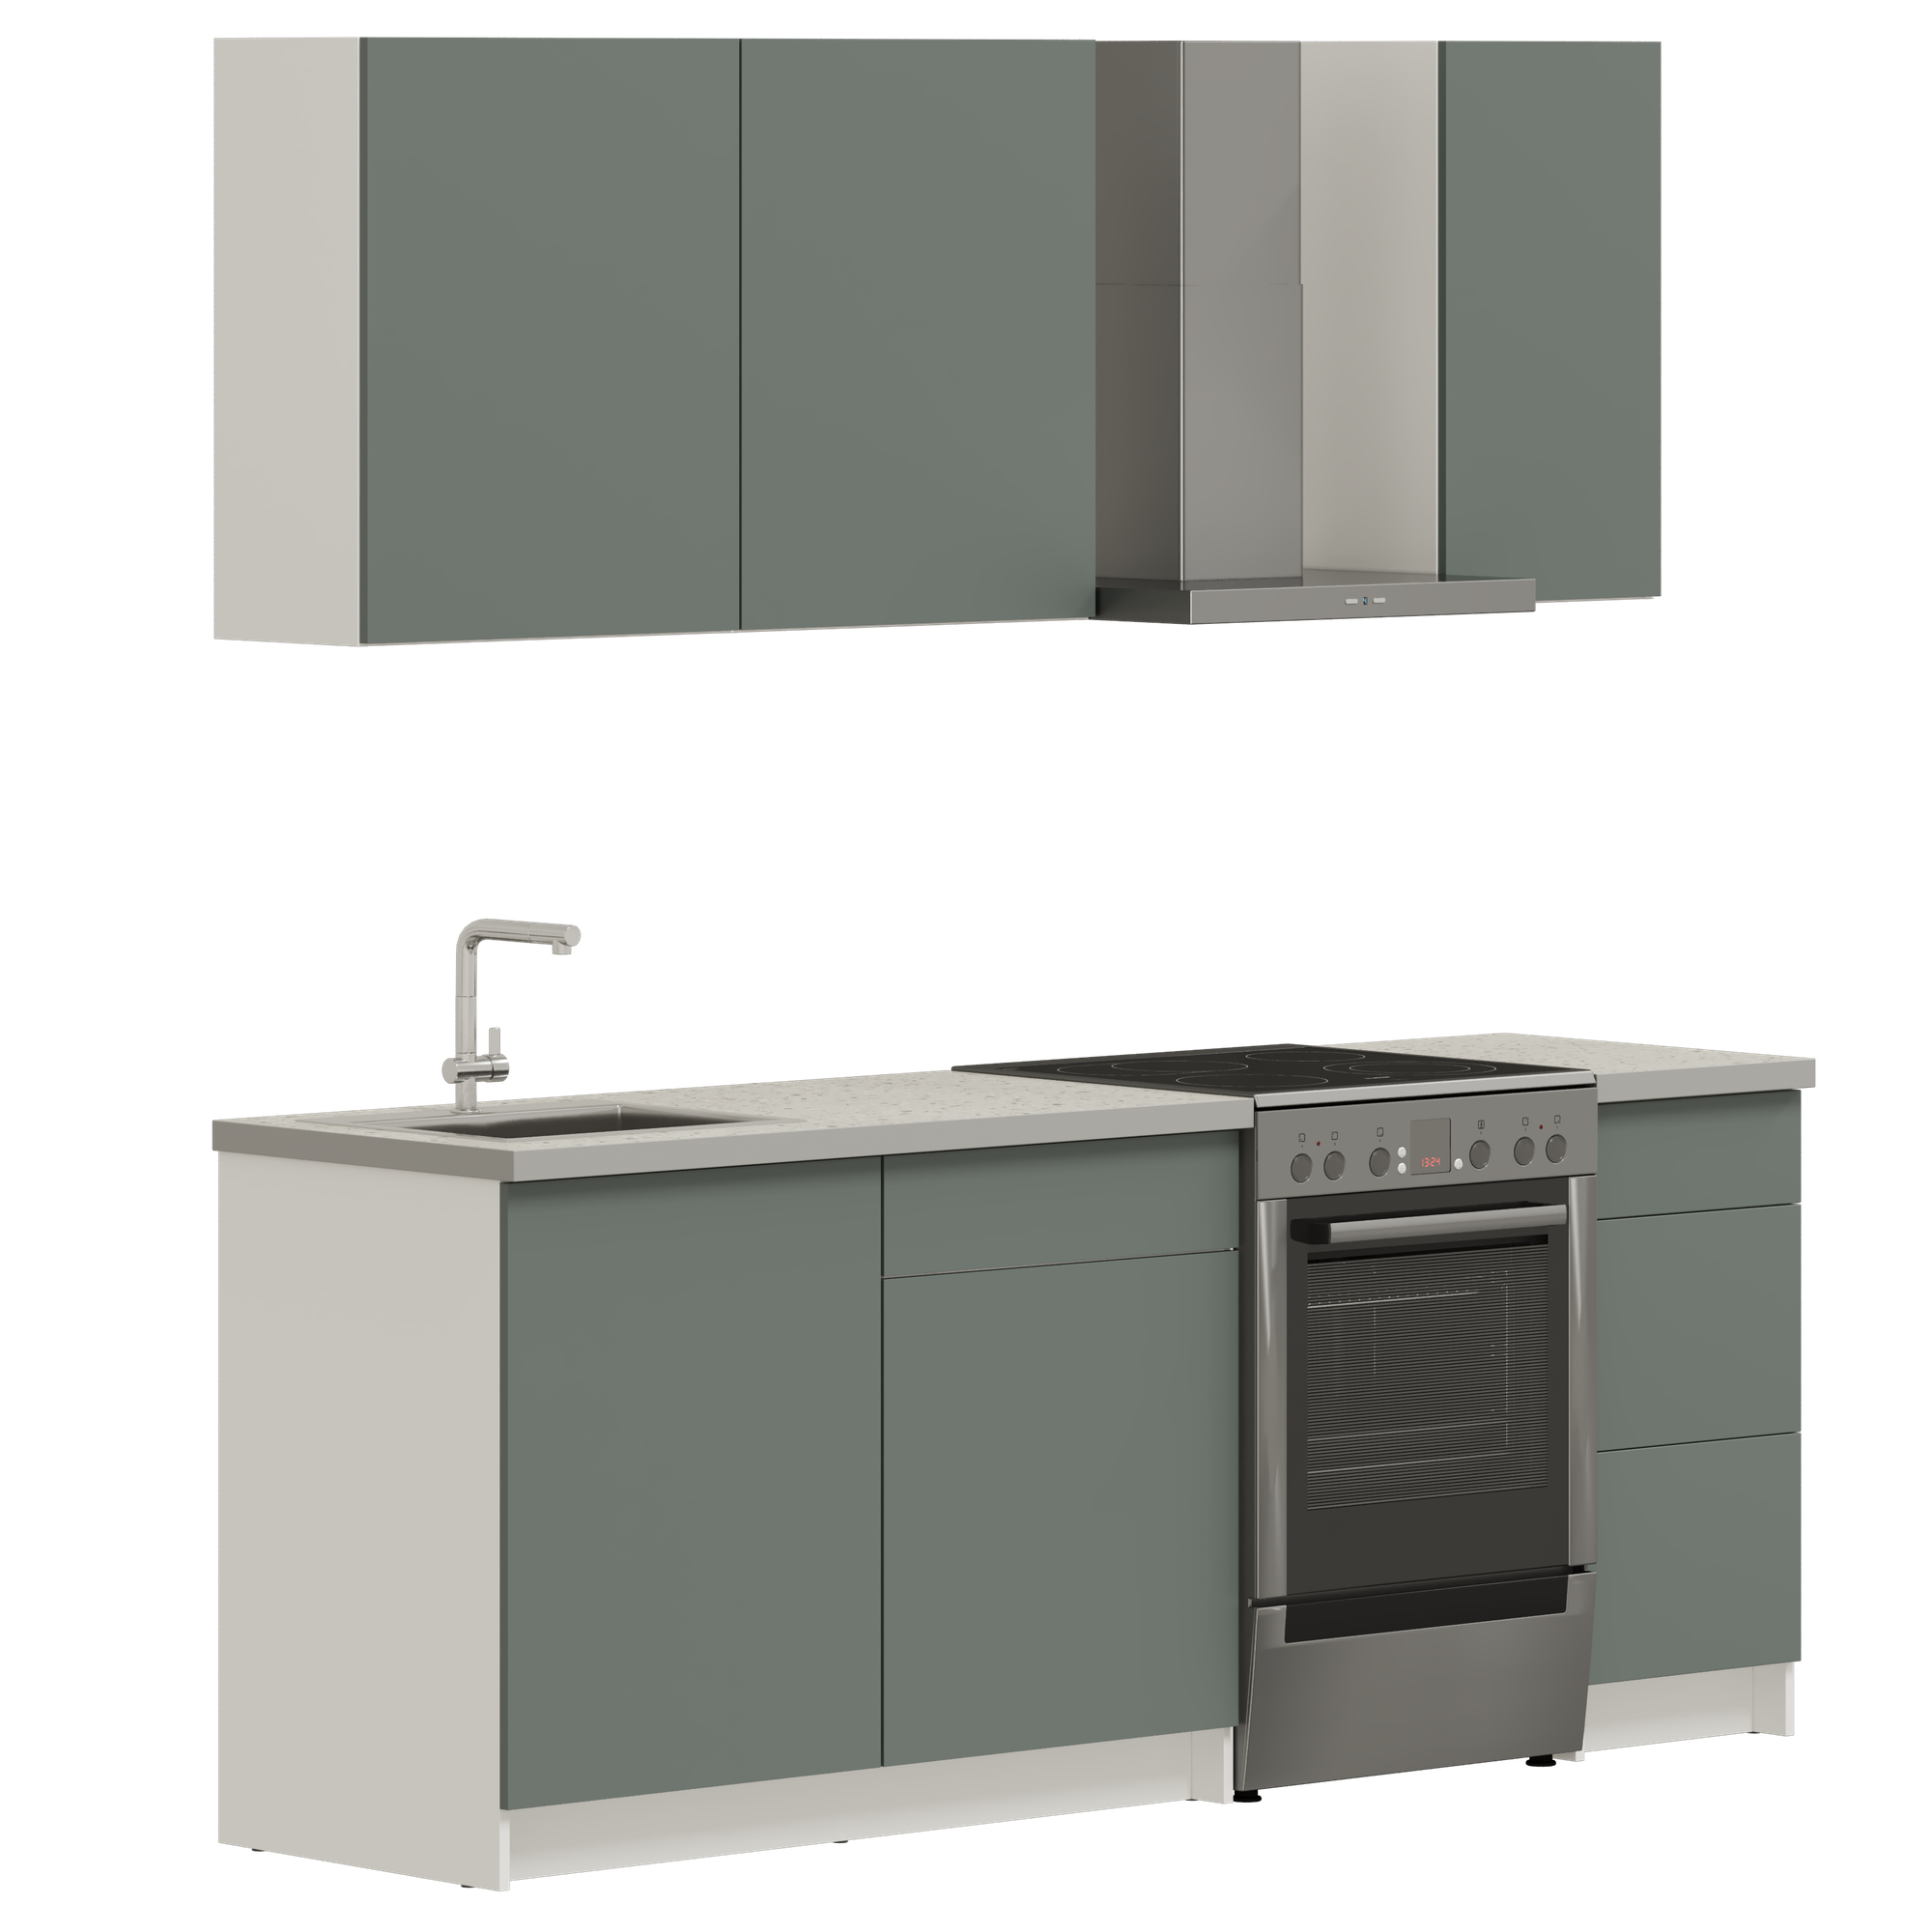 Кухонный гарнитур, кухня прямая илинда 162 см (1,62 м), со столешницей, ЛДСП, дымчатый зеленый